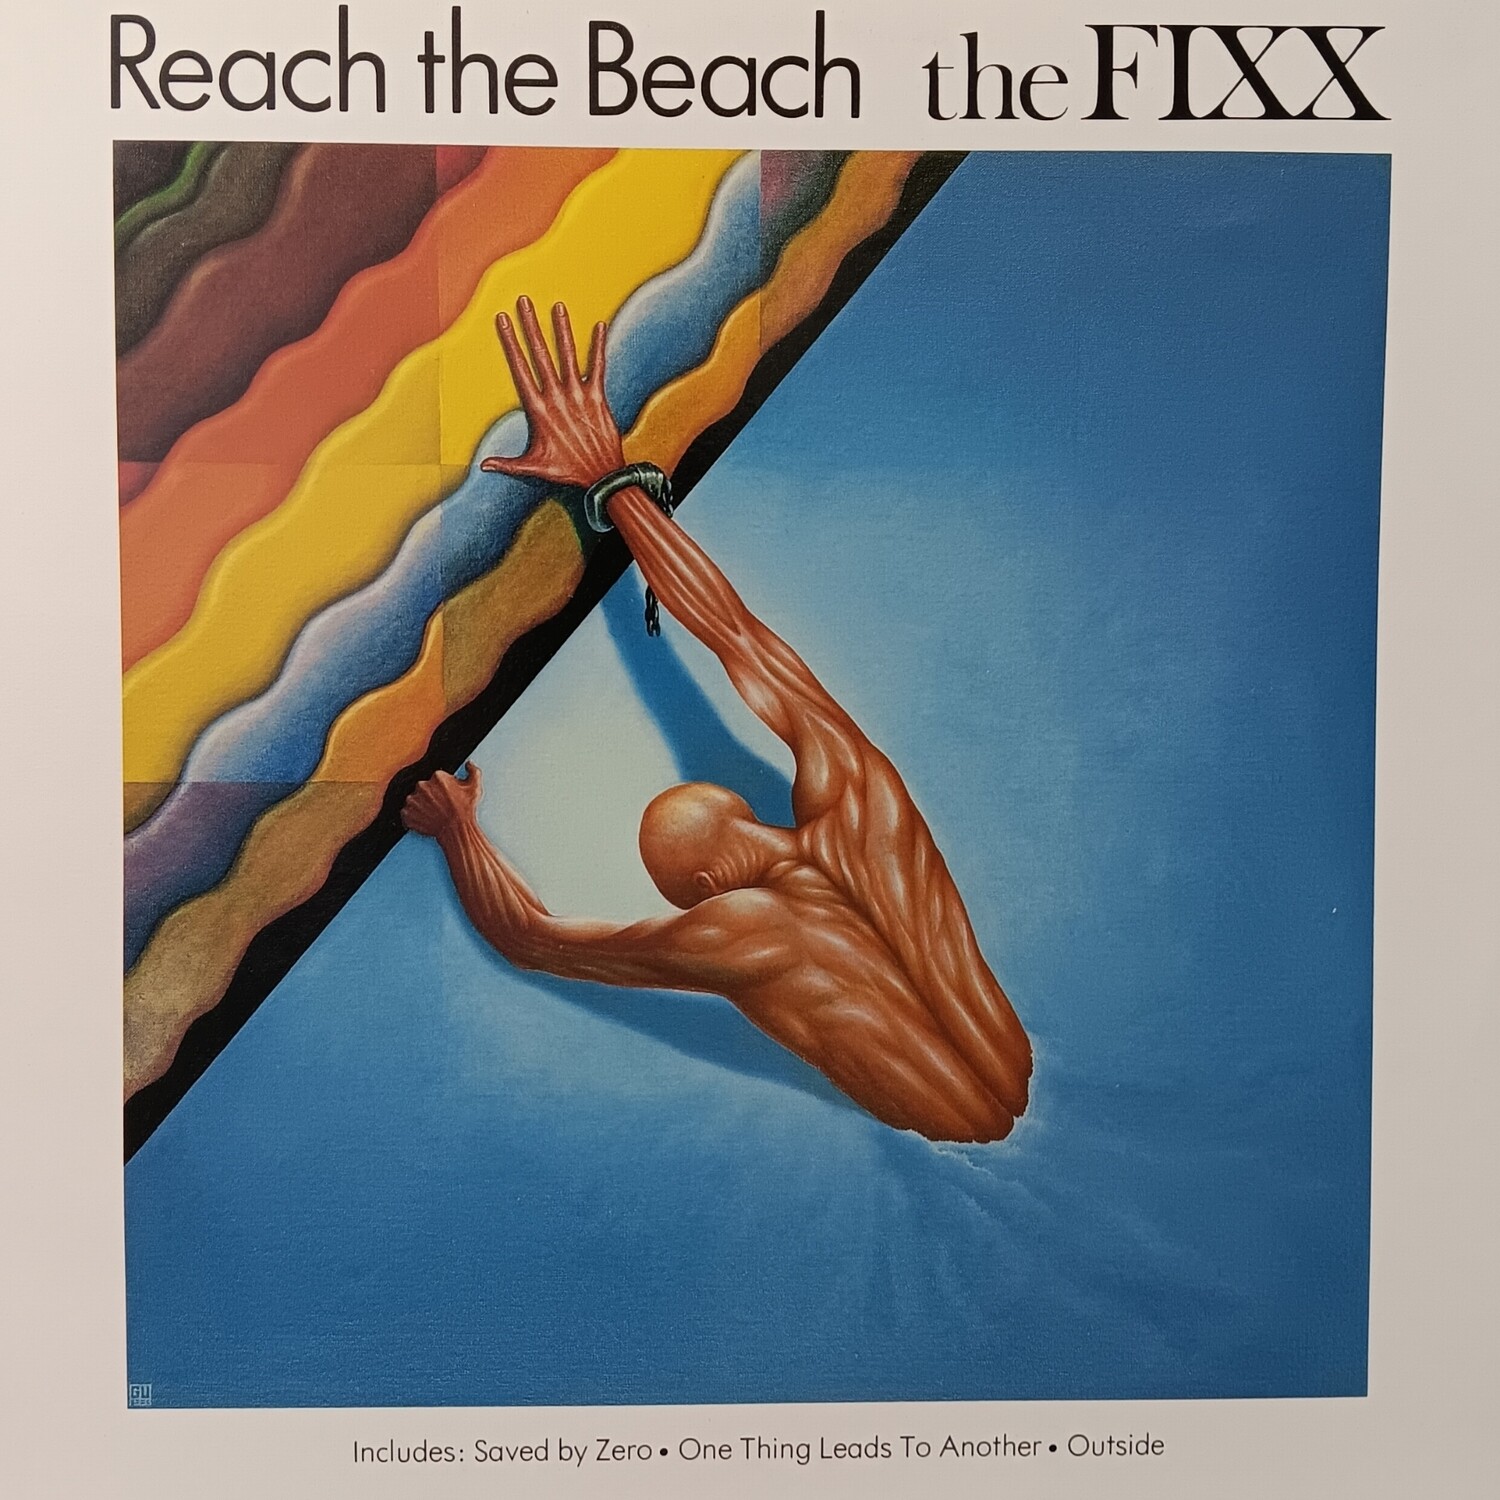 THE FIXX - Reach the beach